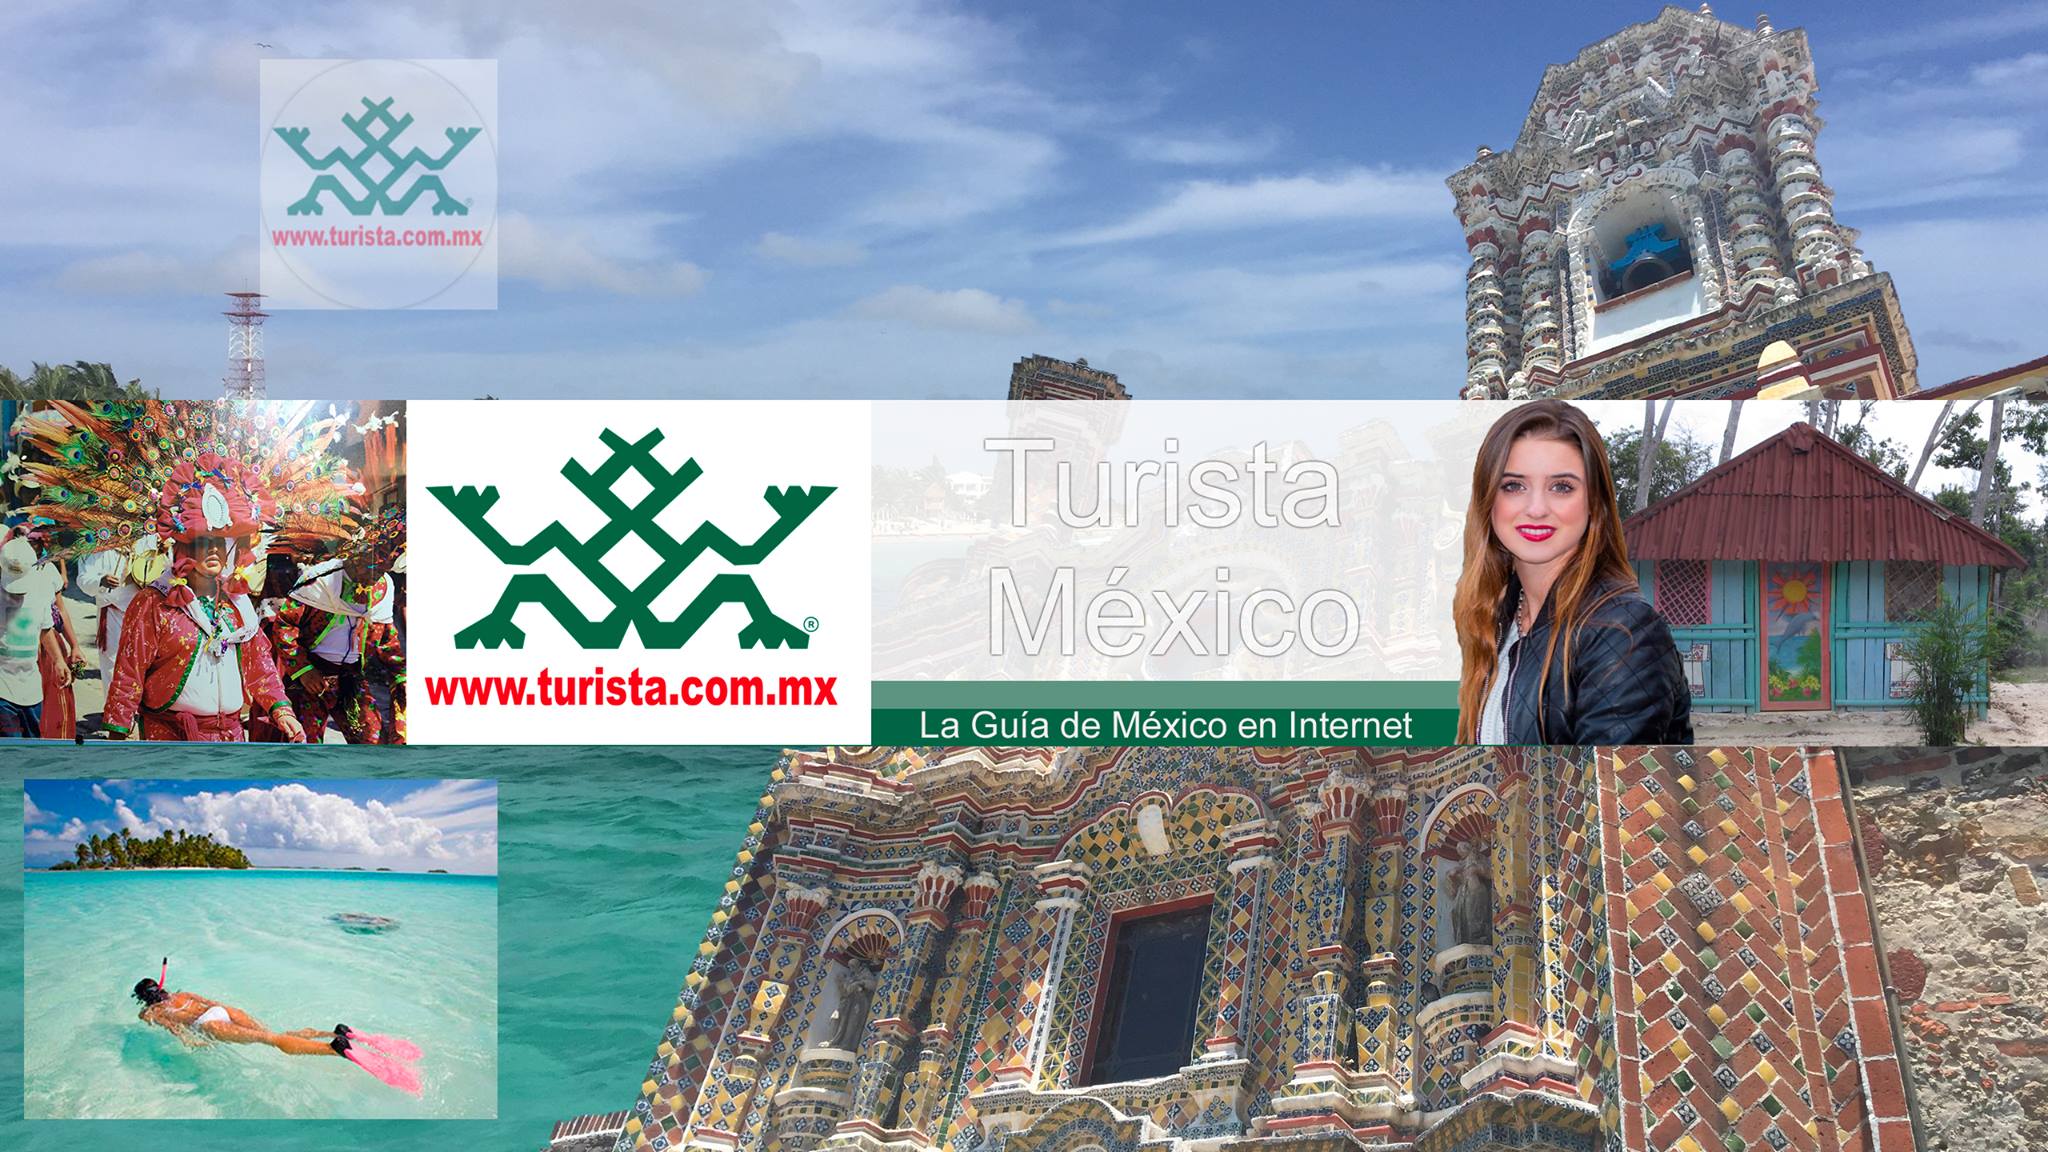 TuristaMexico バナー